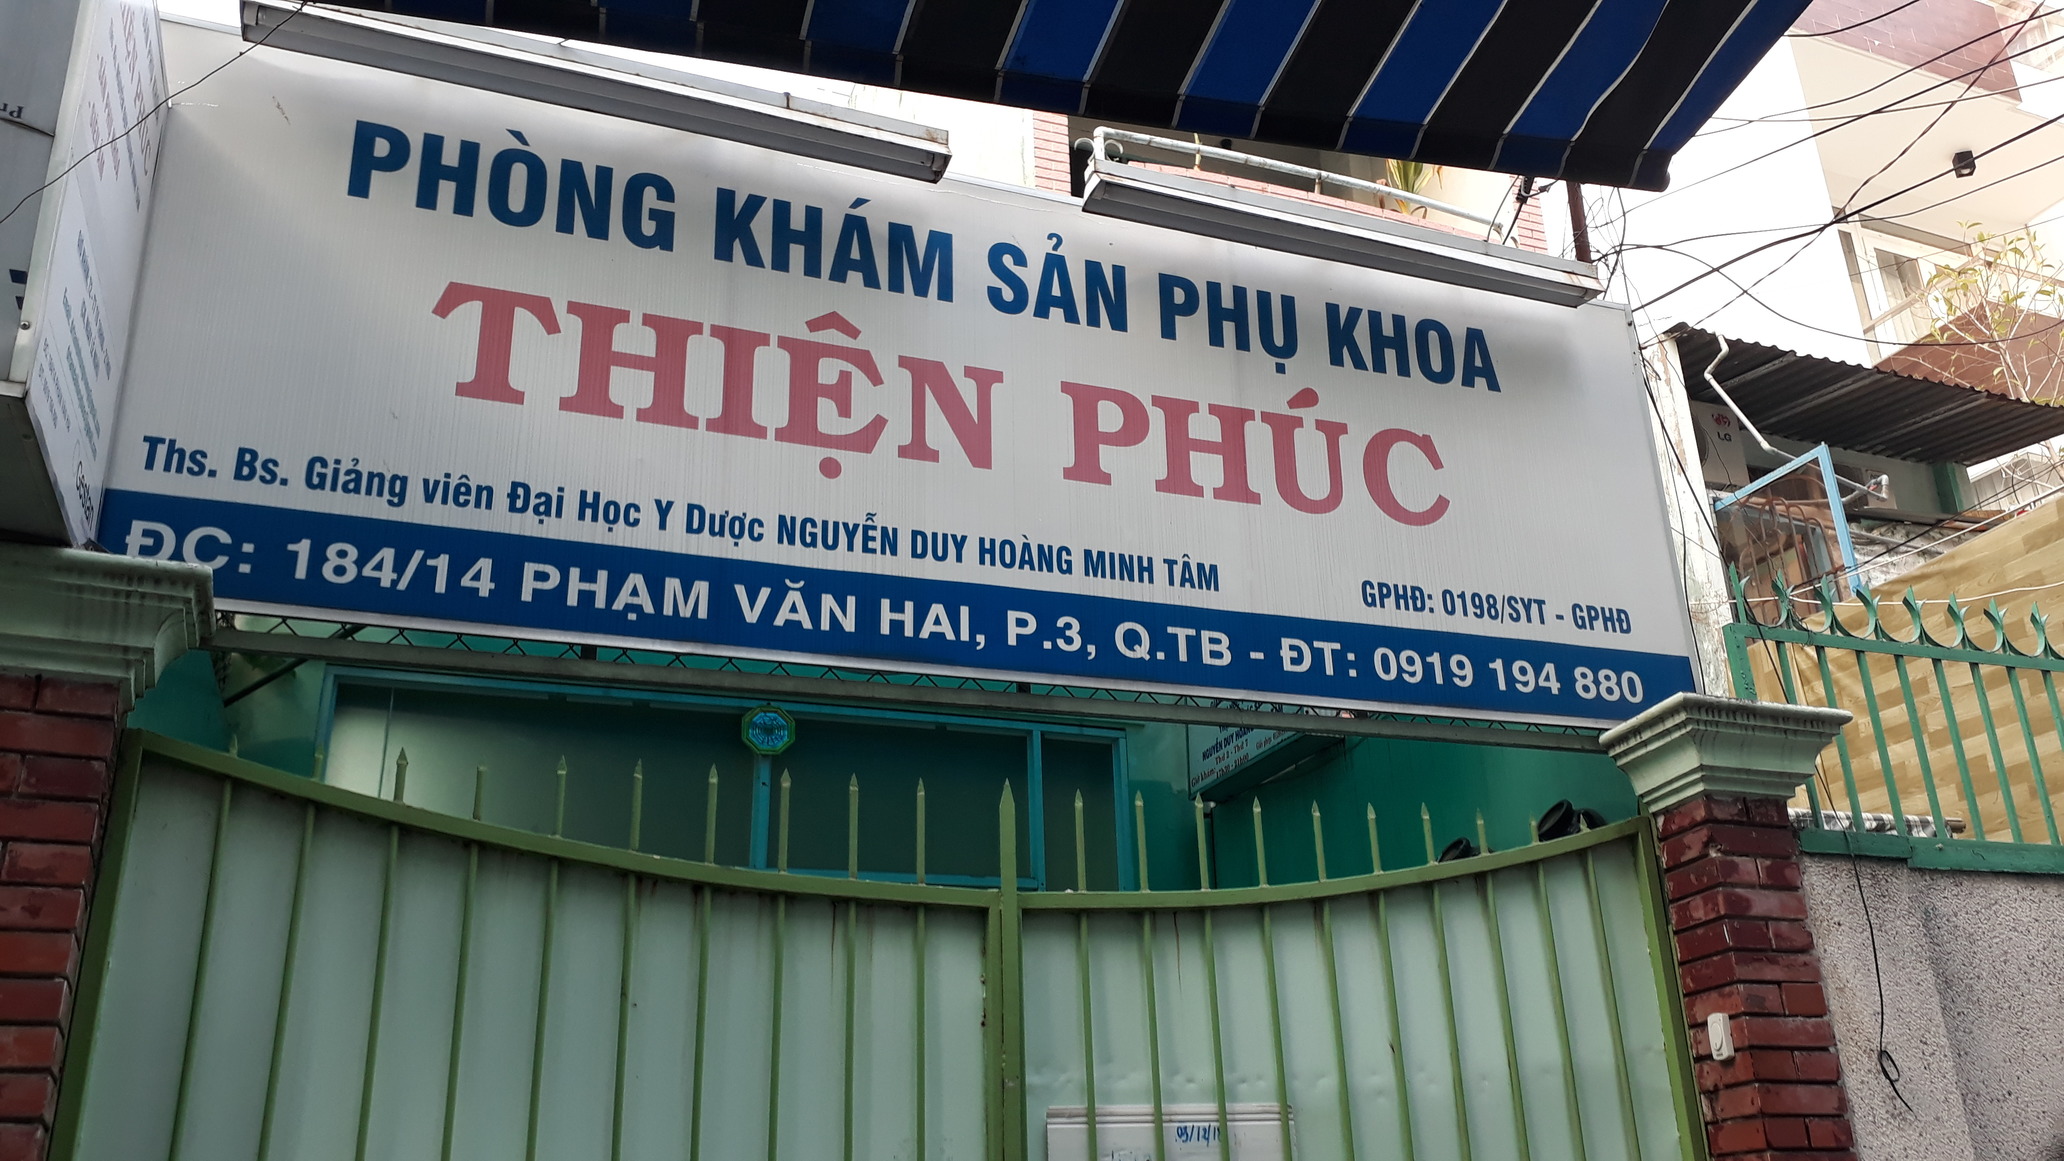 Phòng khám Sản phụ khoa & Siêu âm - BS. Nguyễn Duy Hoàng Minh Tâm